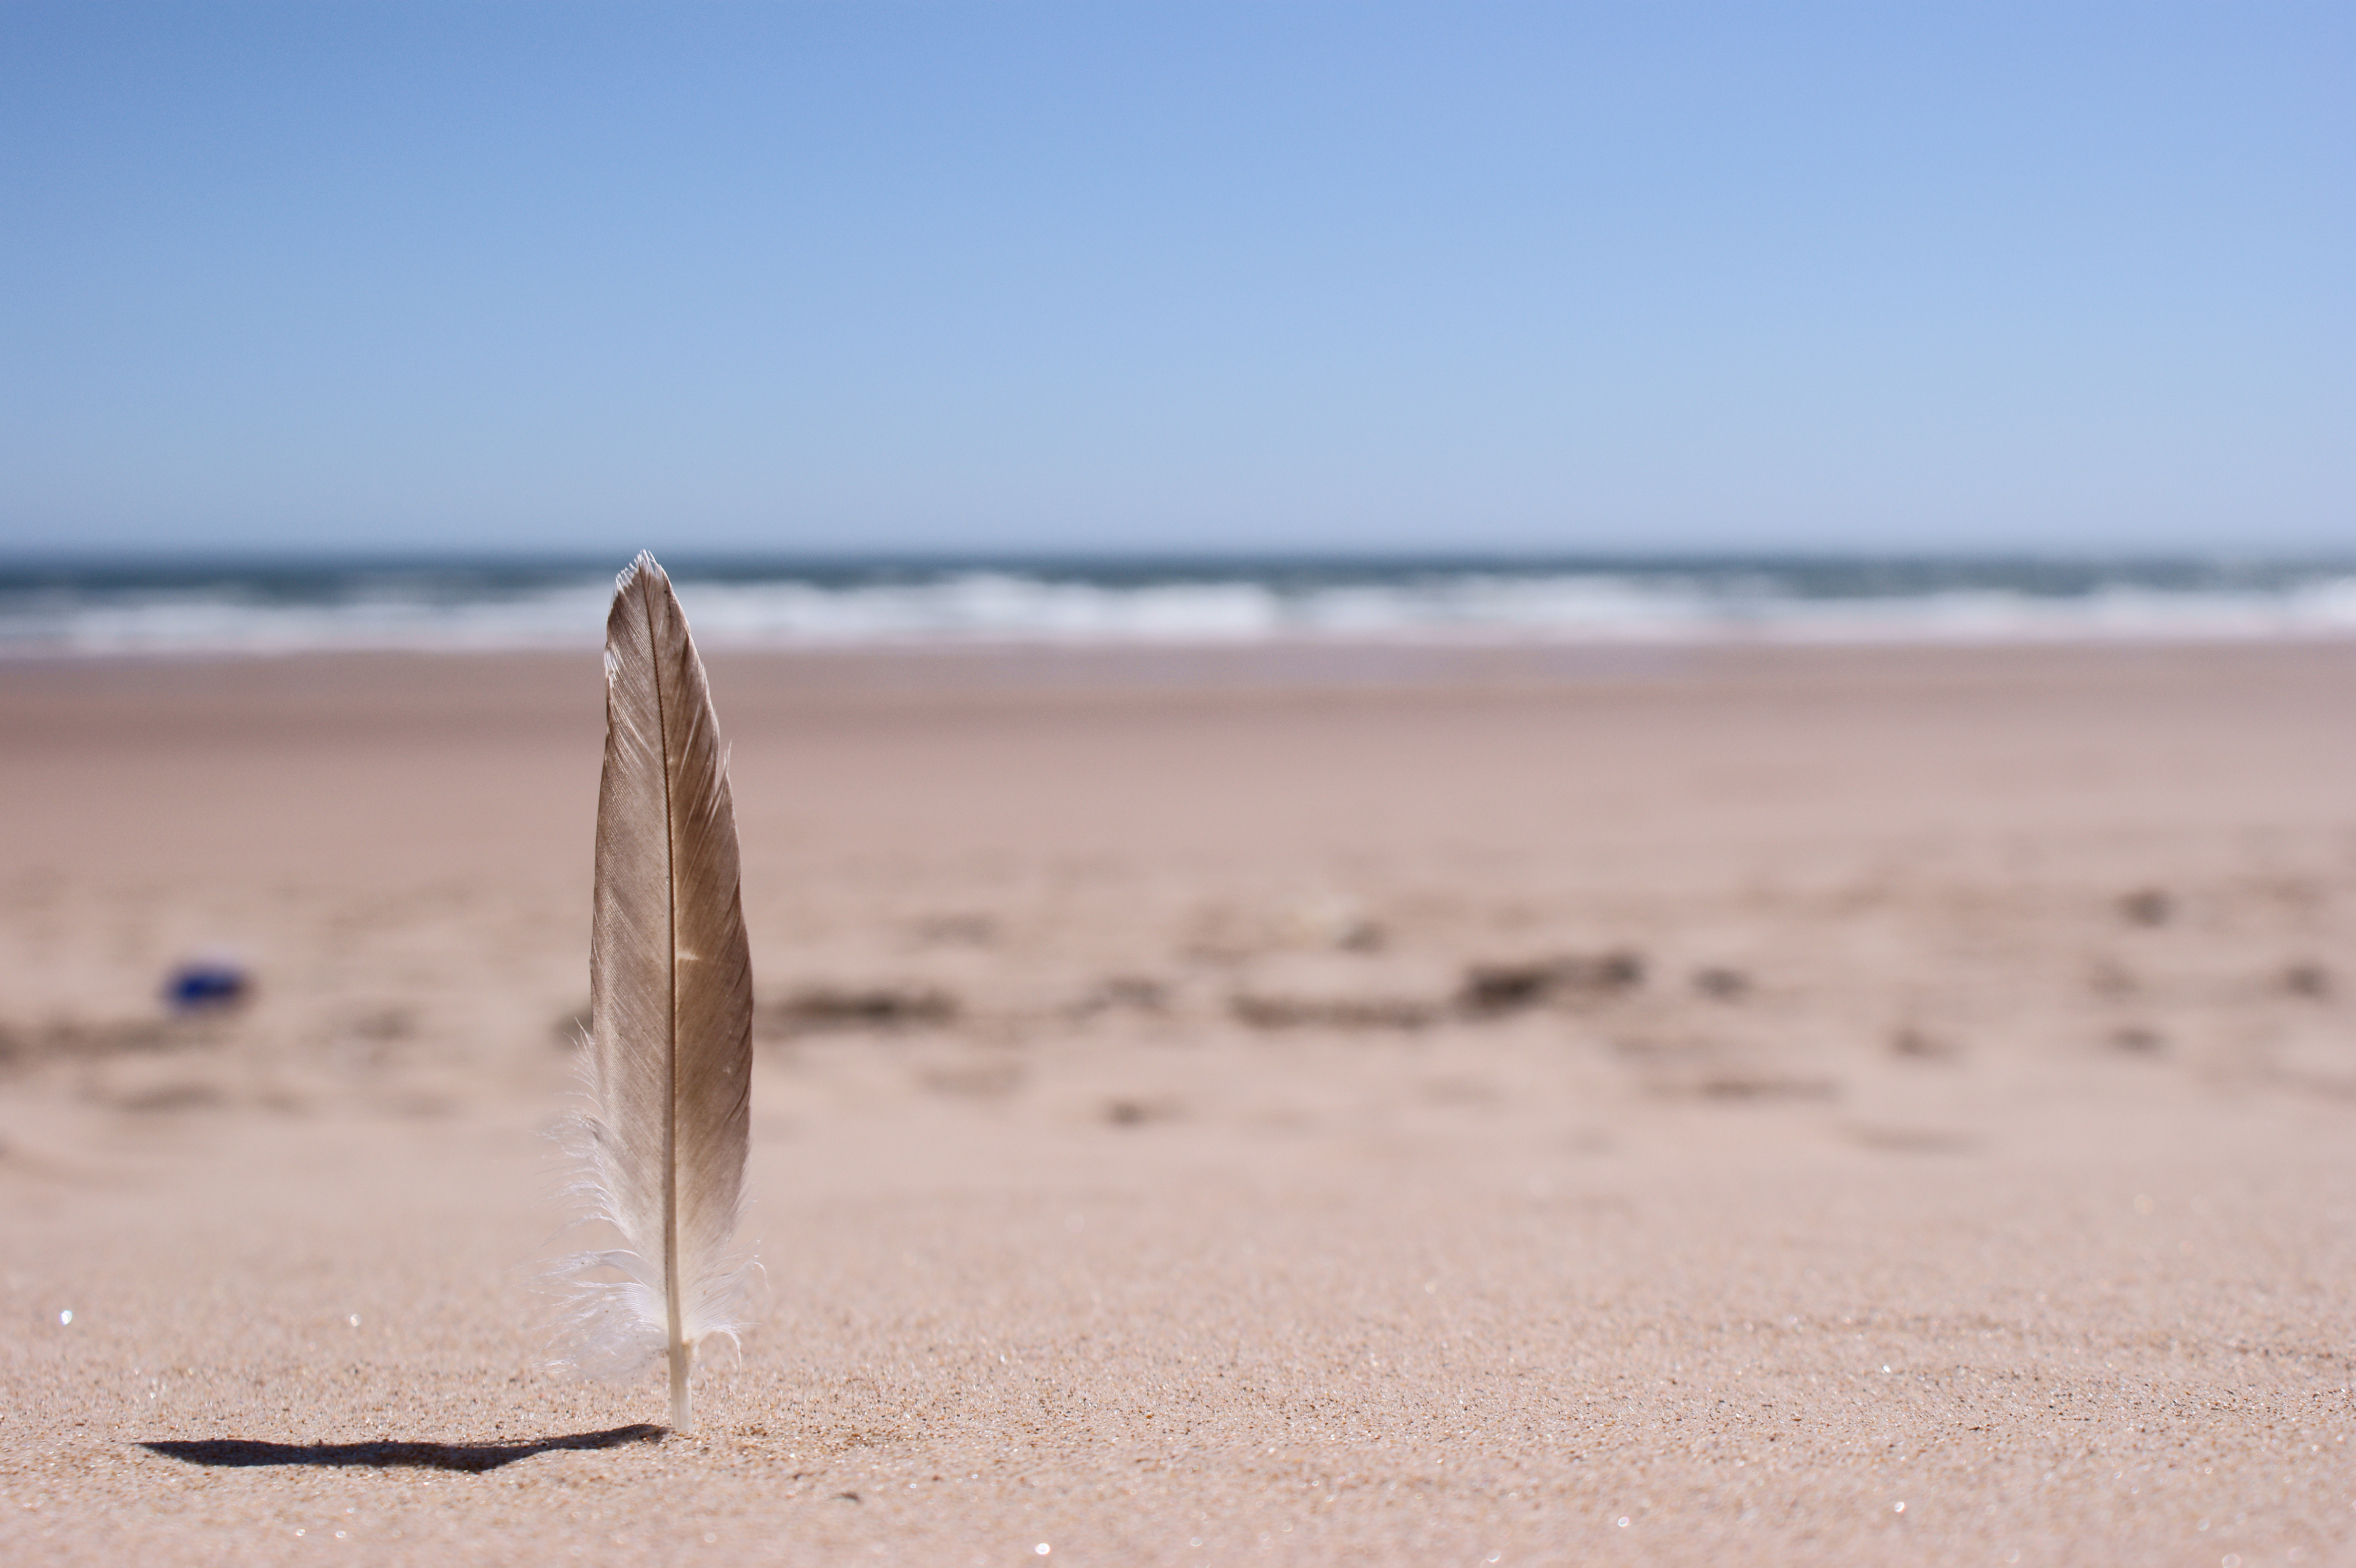 Photograph: Beach Feather